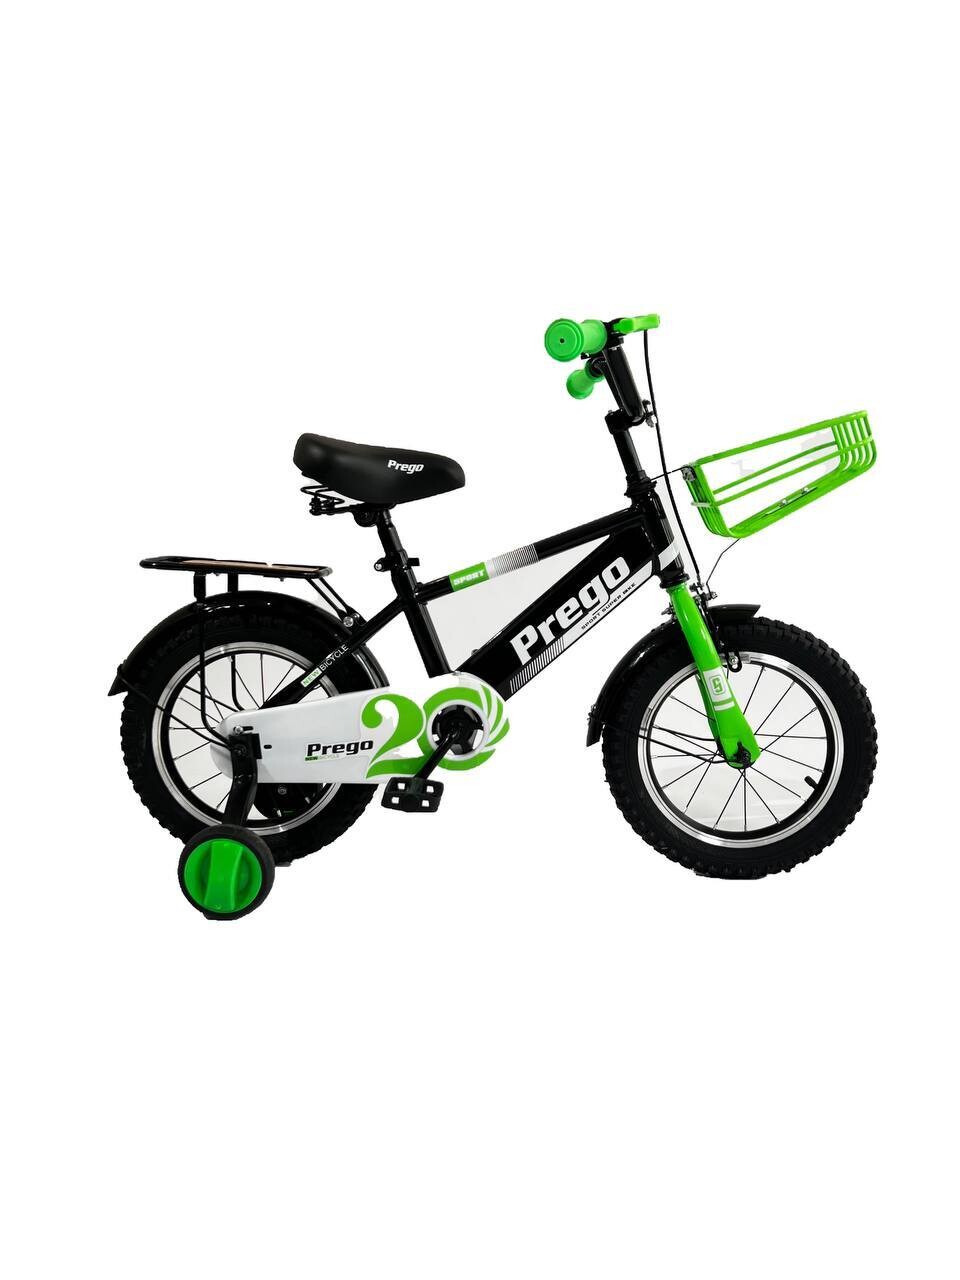 Двухколесный велосипед Prego 20D зеленый